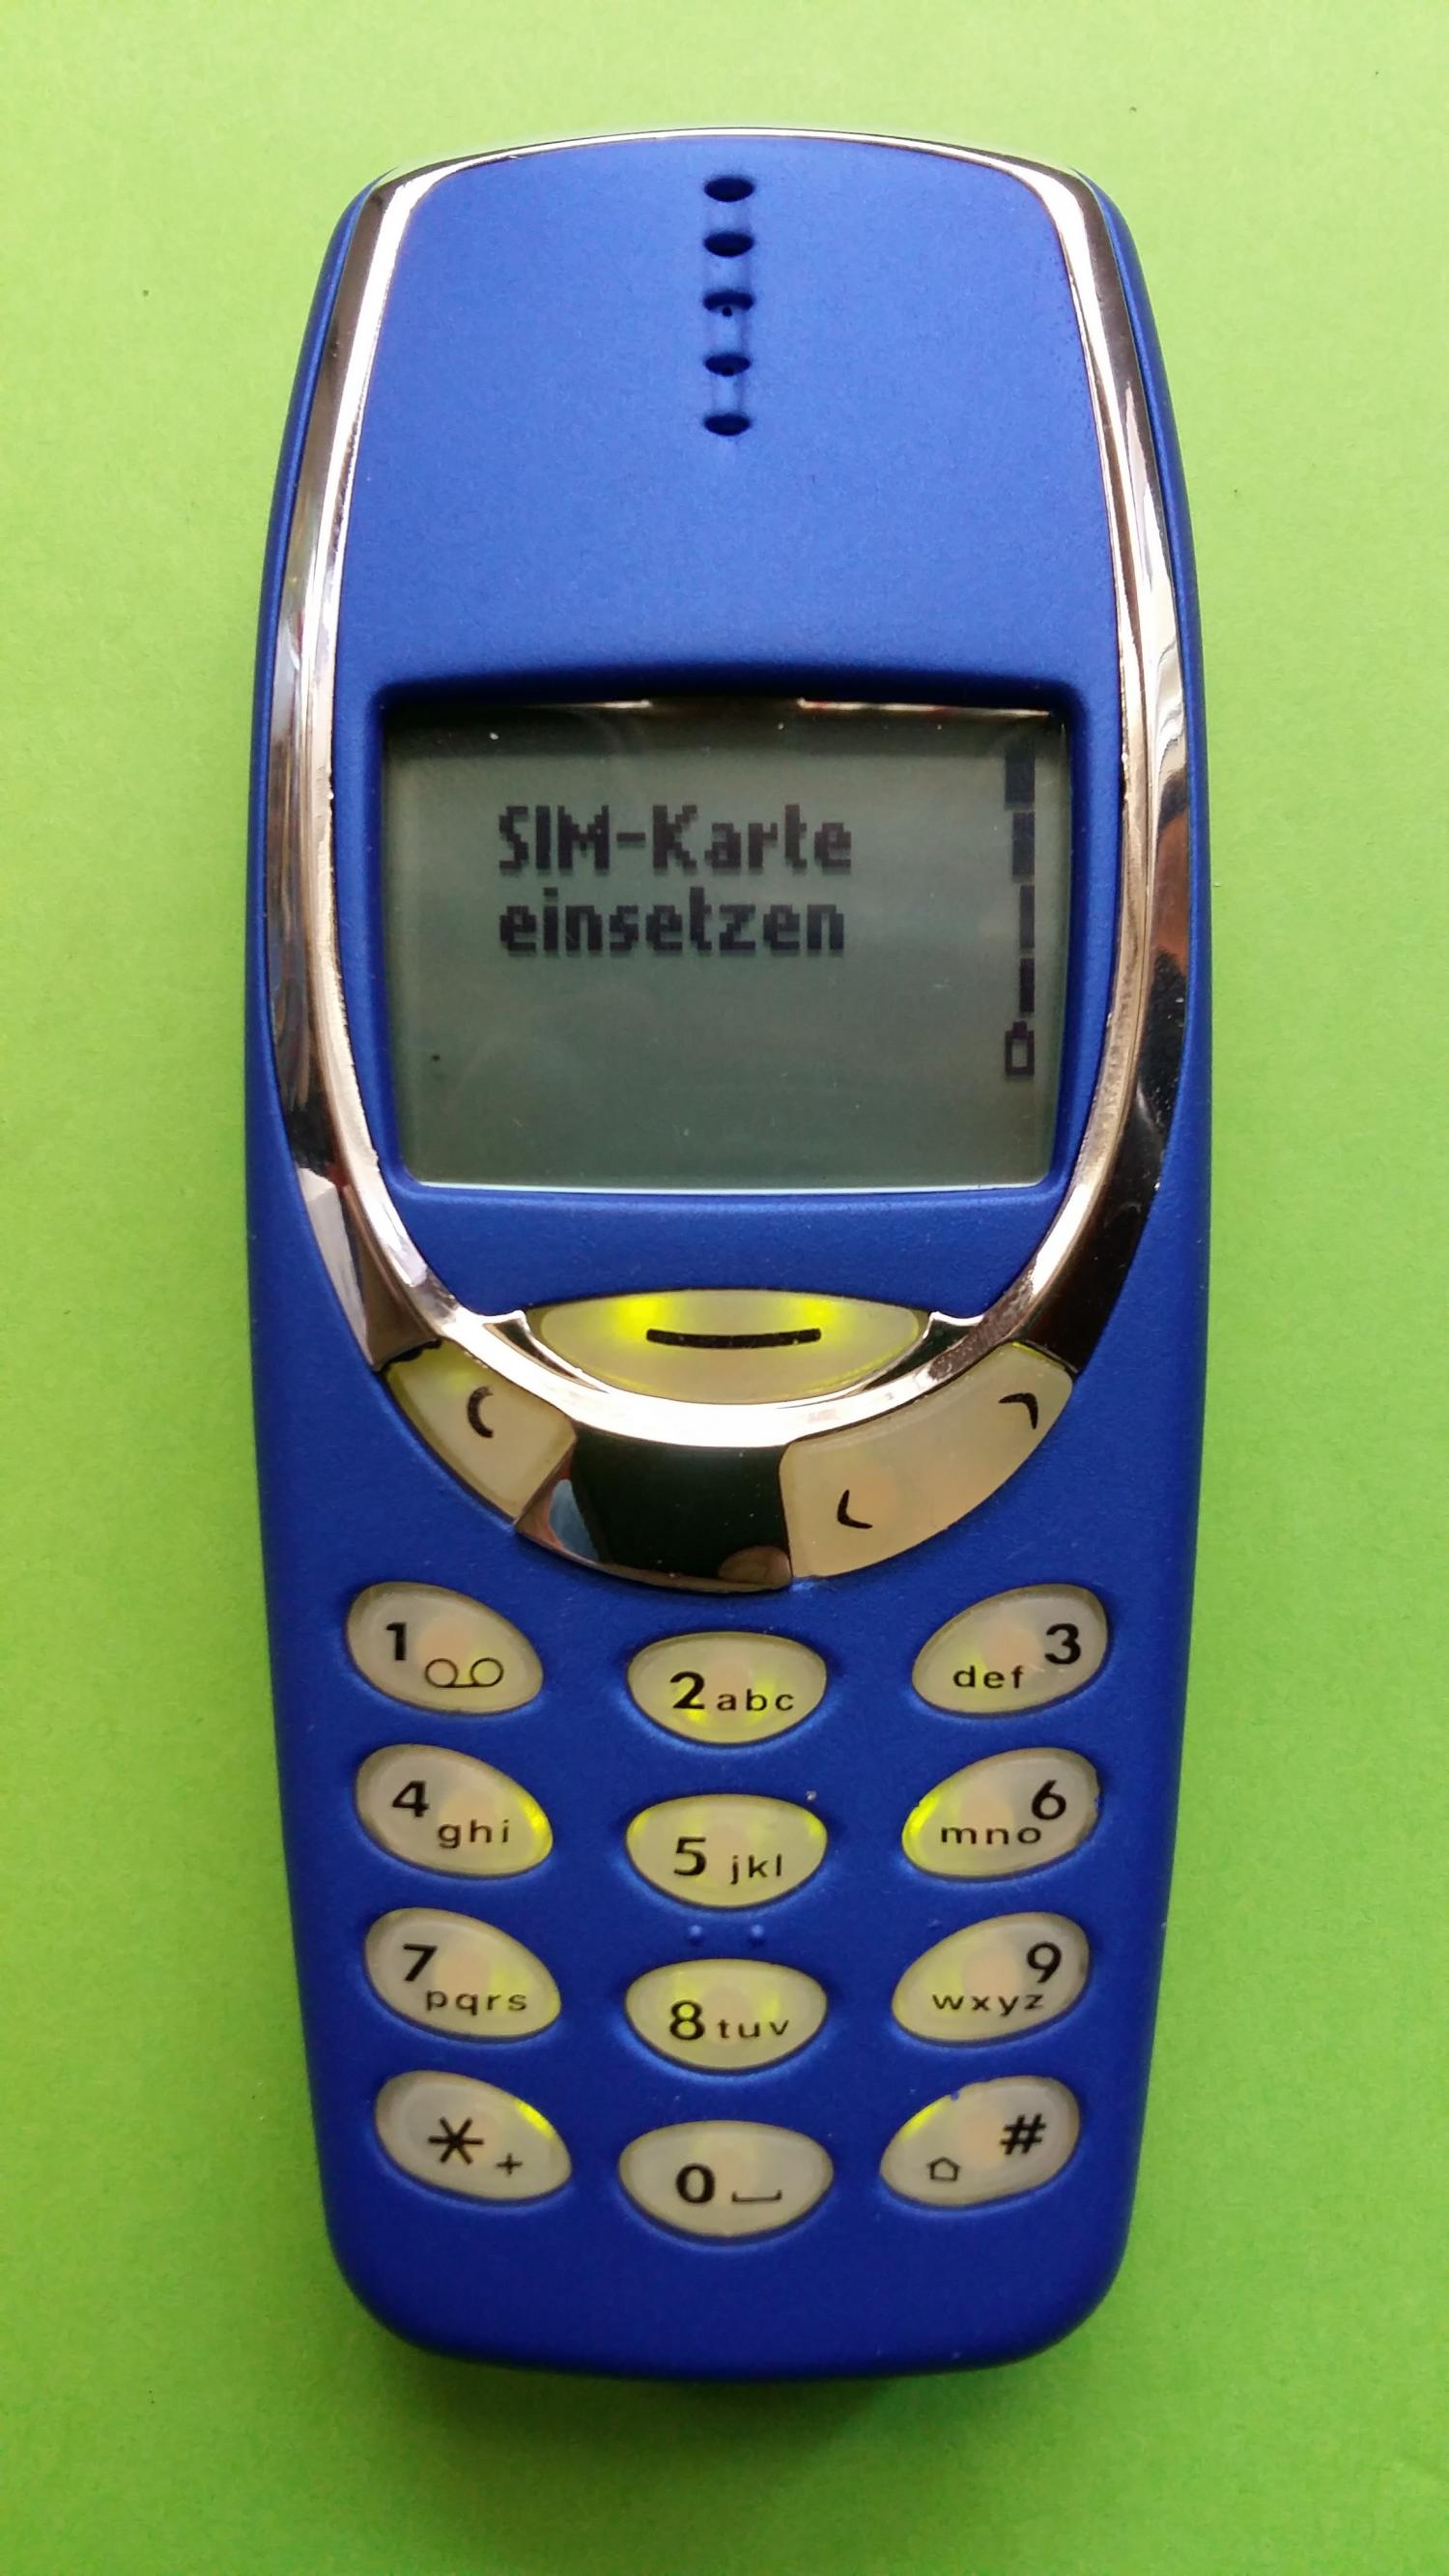 image-7313382-Nokia 3330 (16)1.jpg